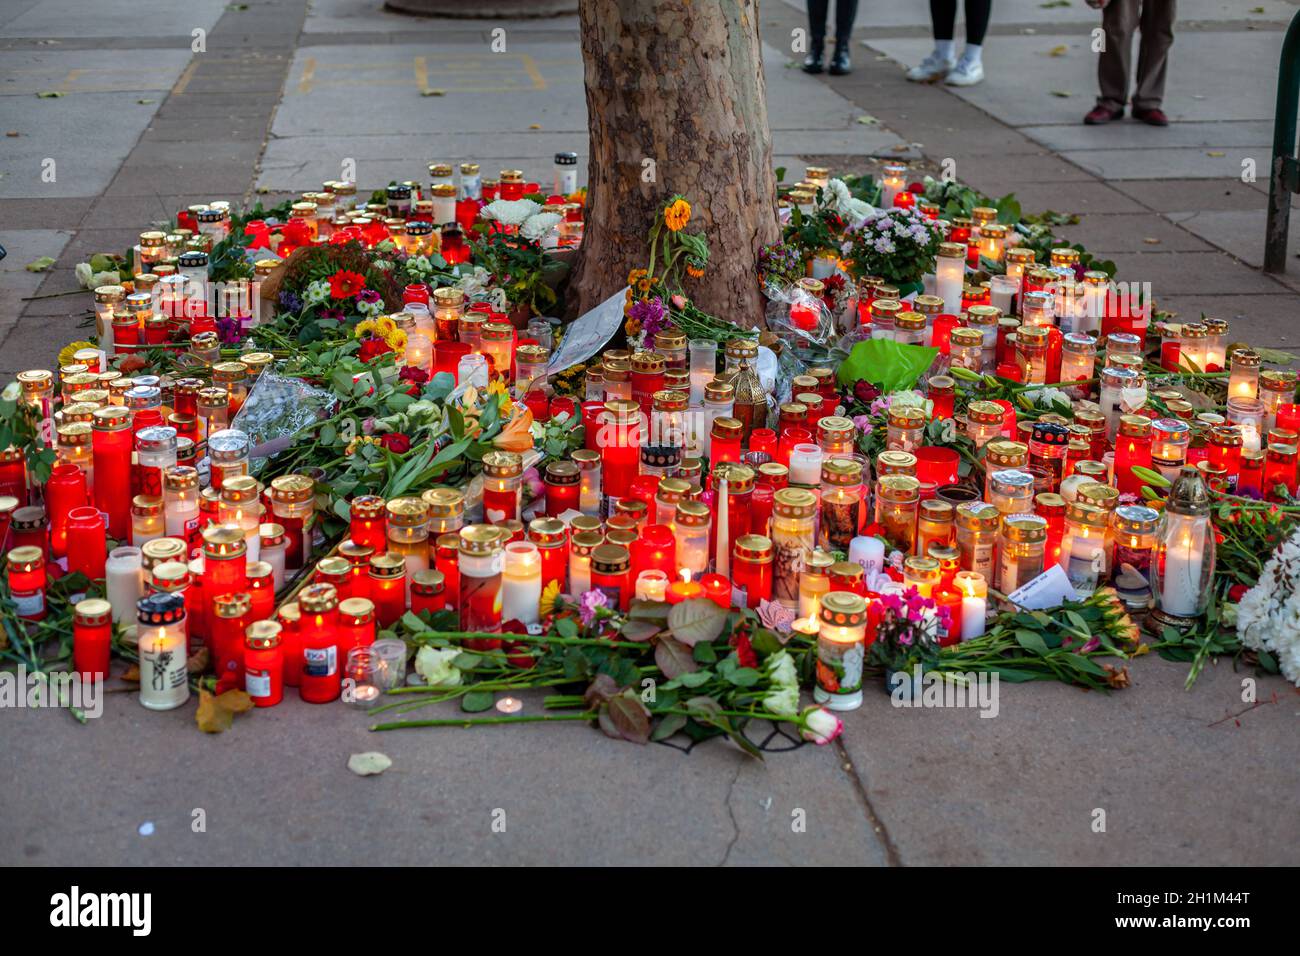 Wien, Österreich - 11.05.2020: Kerzen und Blumen am Ort des Terroranschlags im November in Wien. Stockfoto